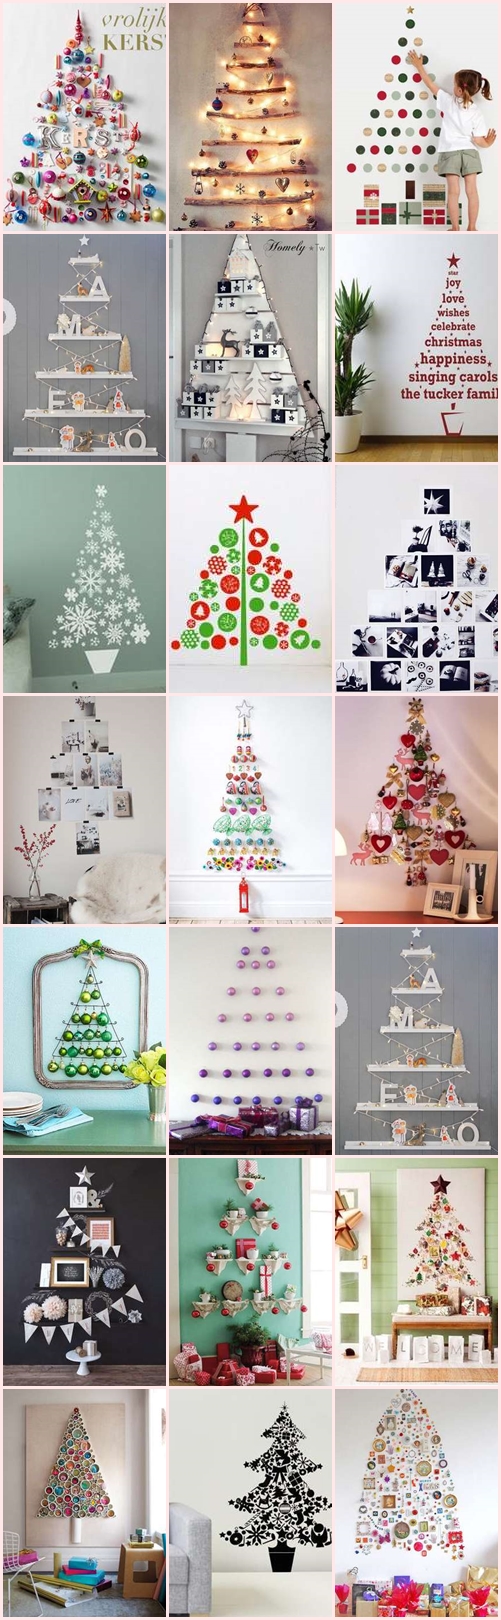 クリスマスツリー 自宅 手作り 壁面飾り 壁飾り おすすめ